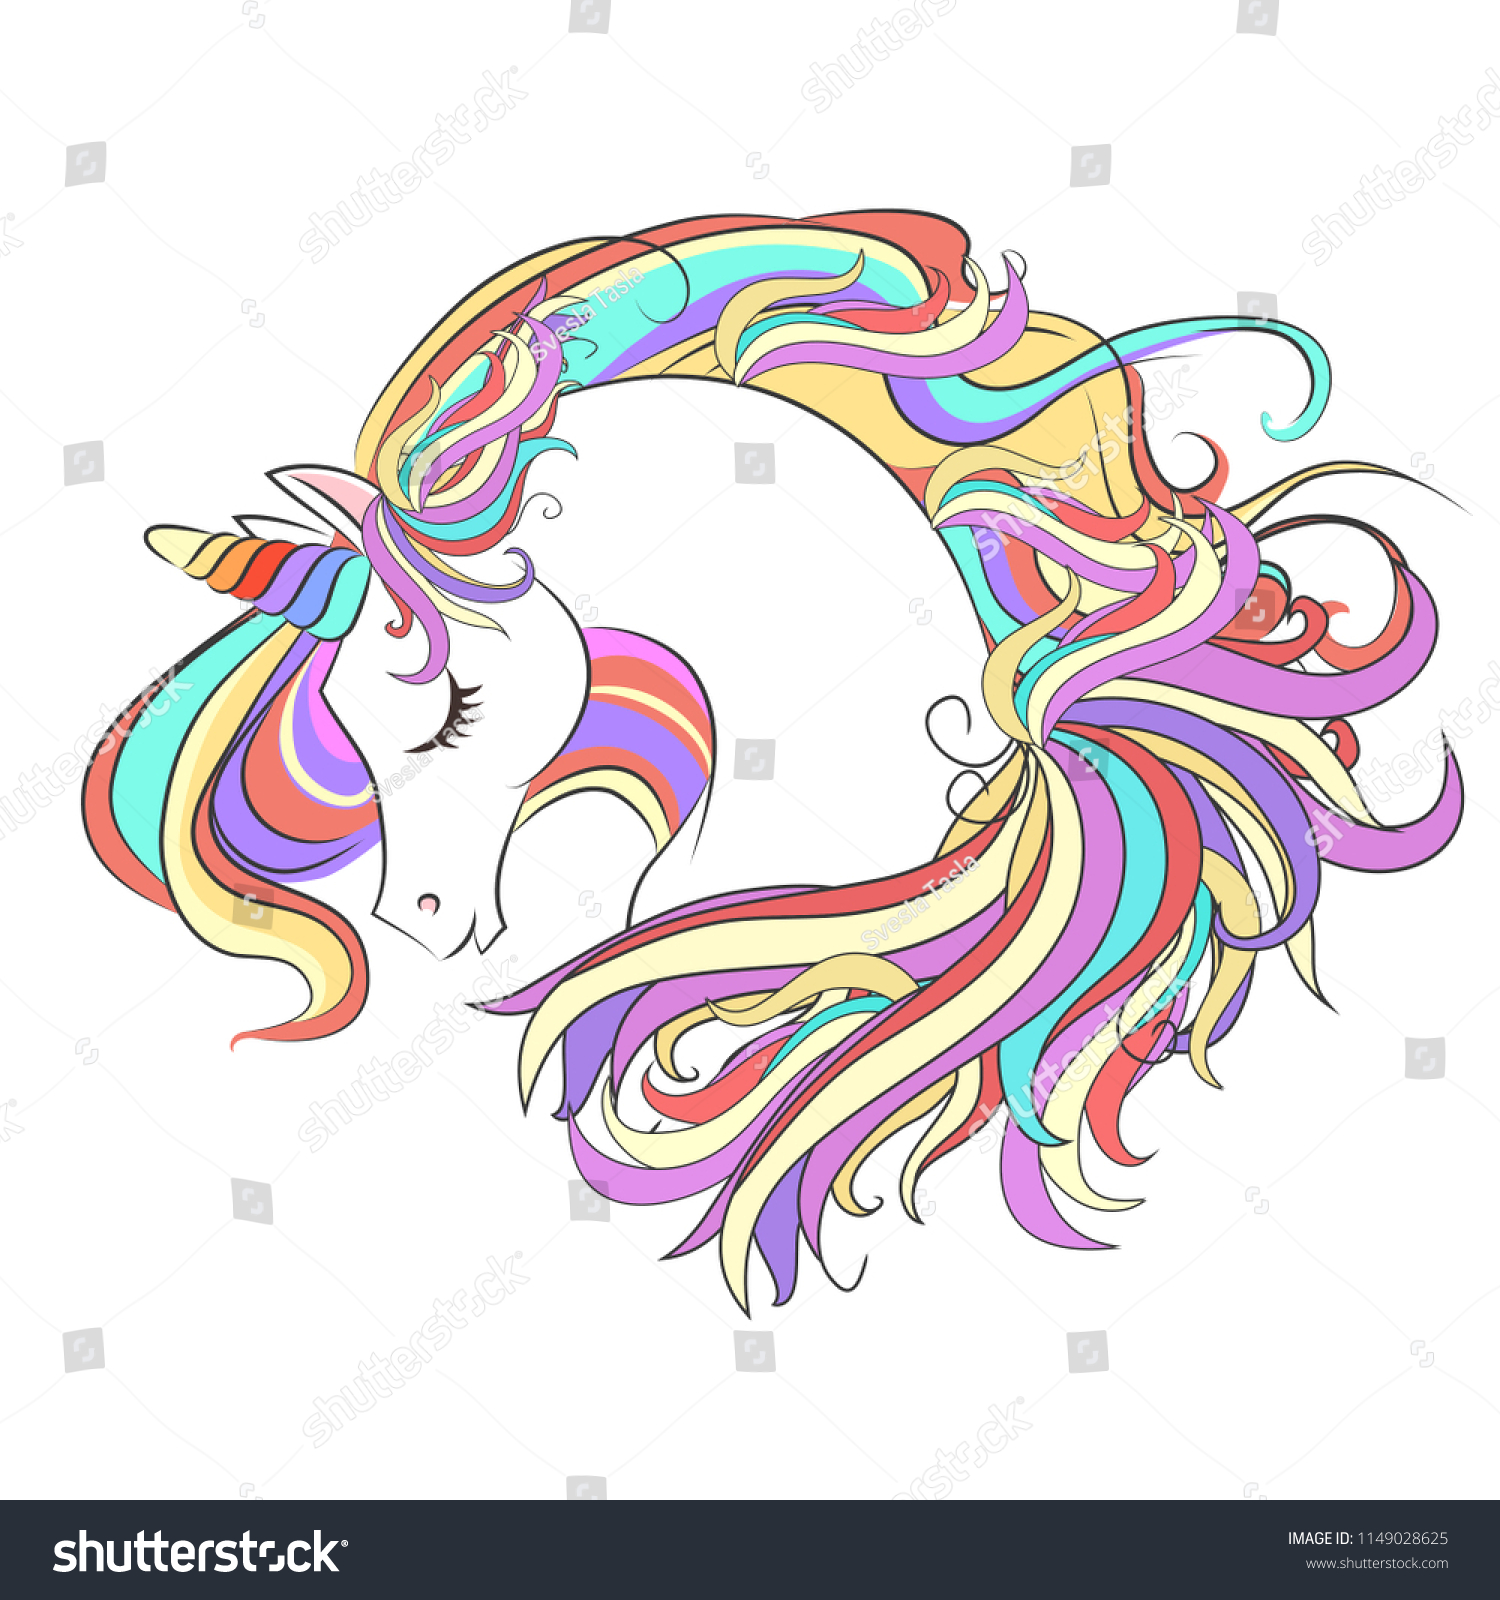 Cute White Unicorn Rainbow Hair Vector Stock Vector (Royalty Free ...